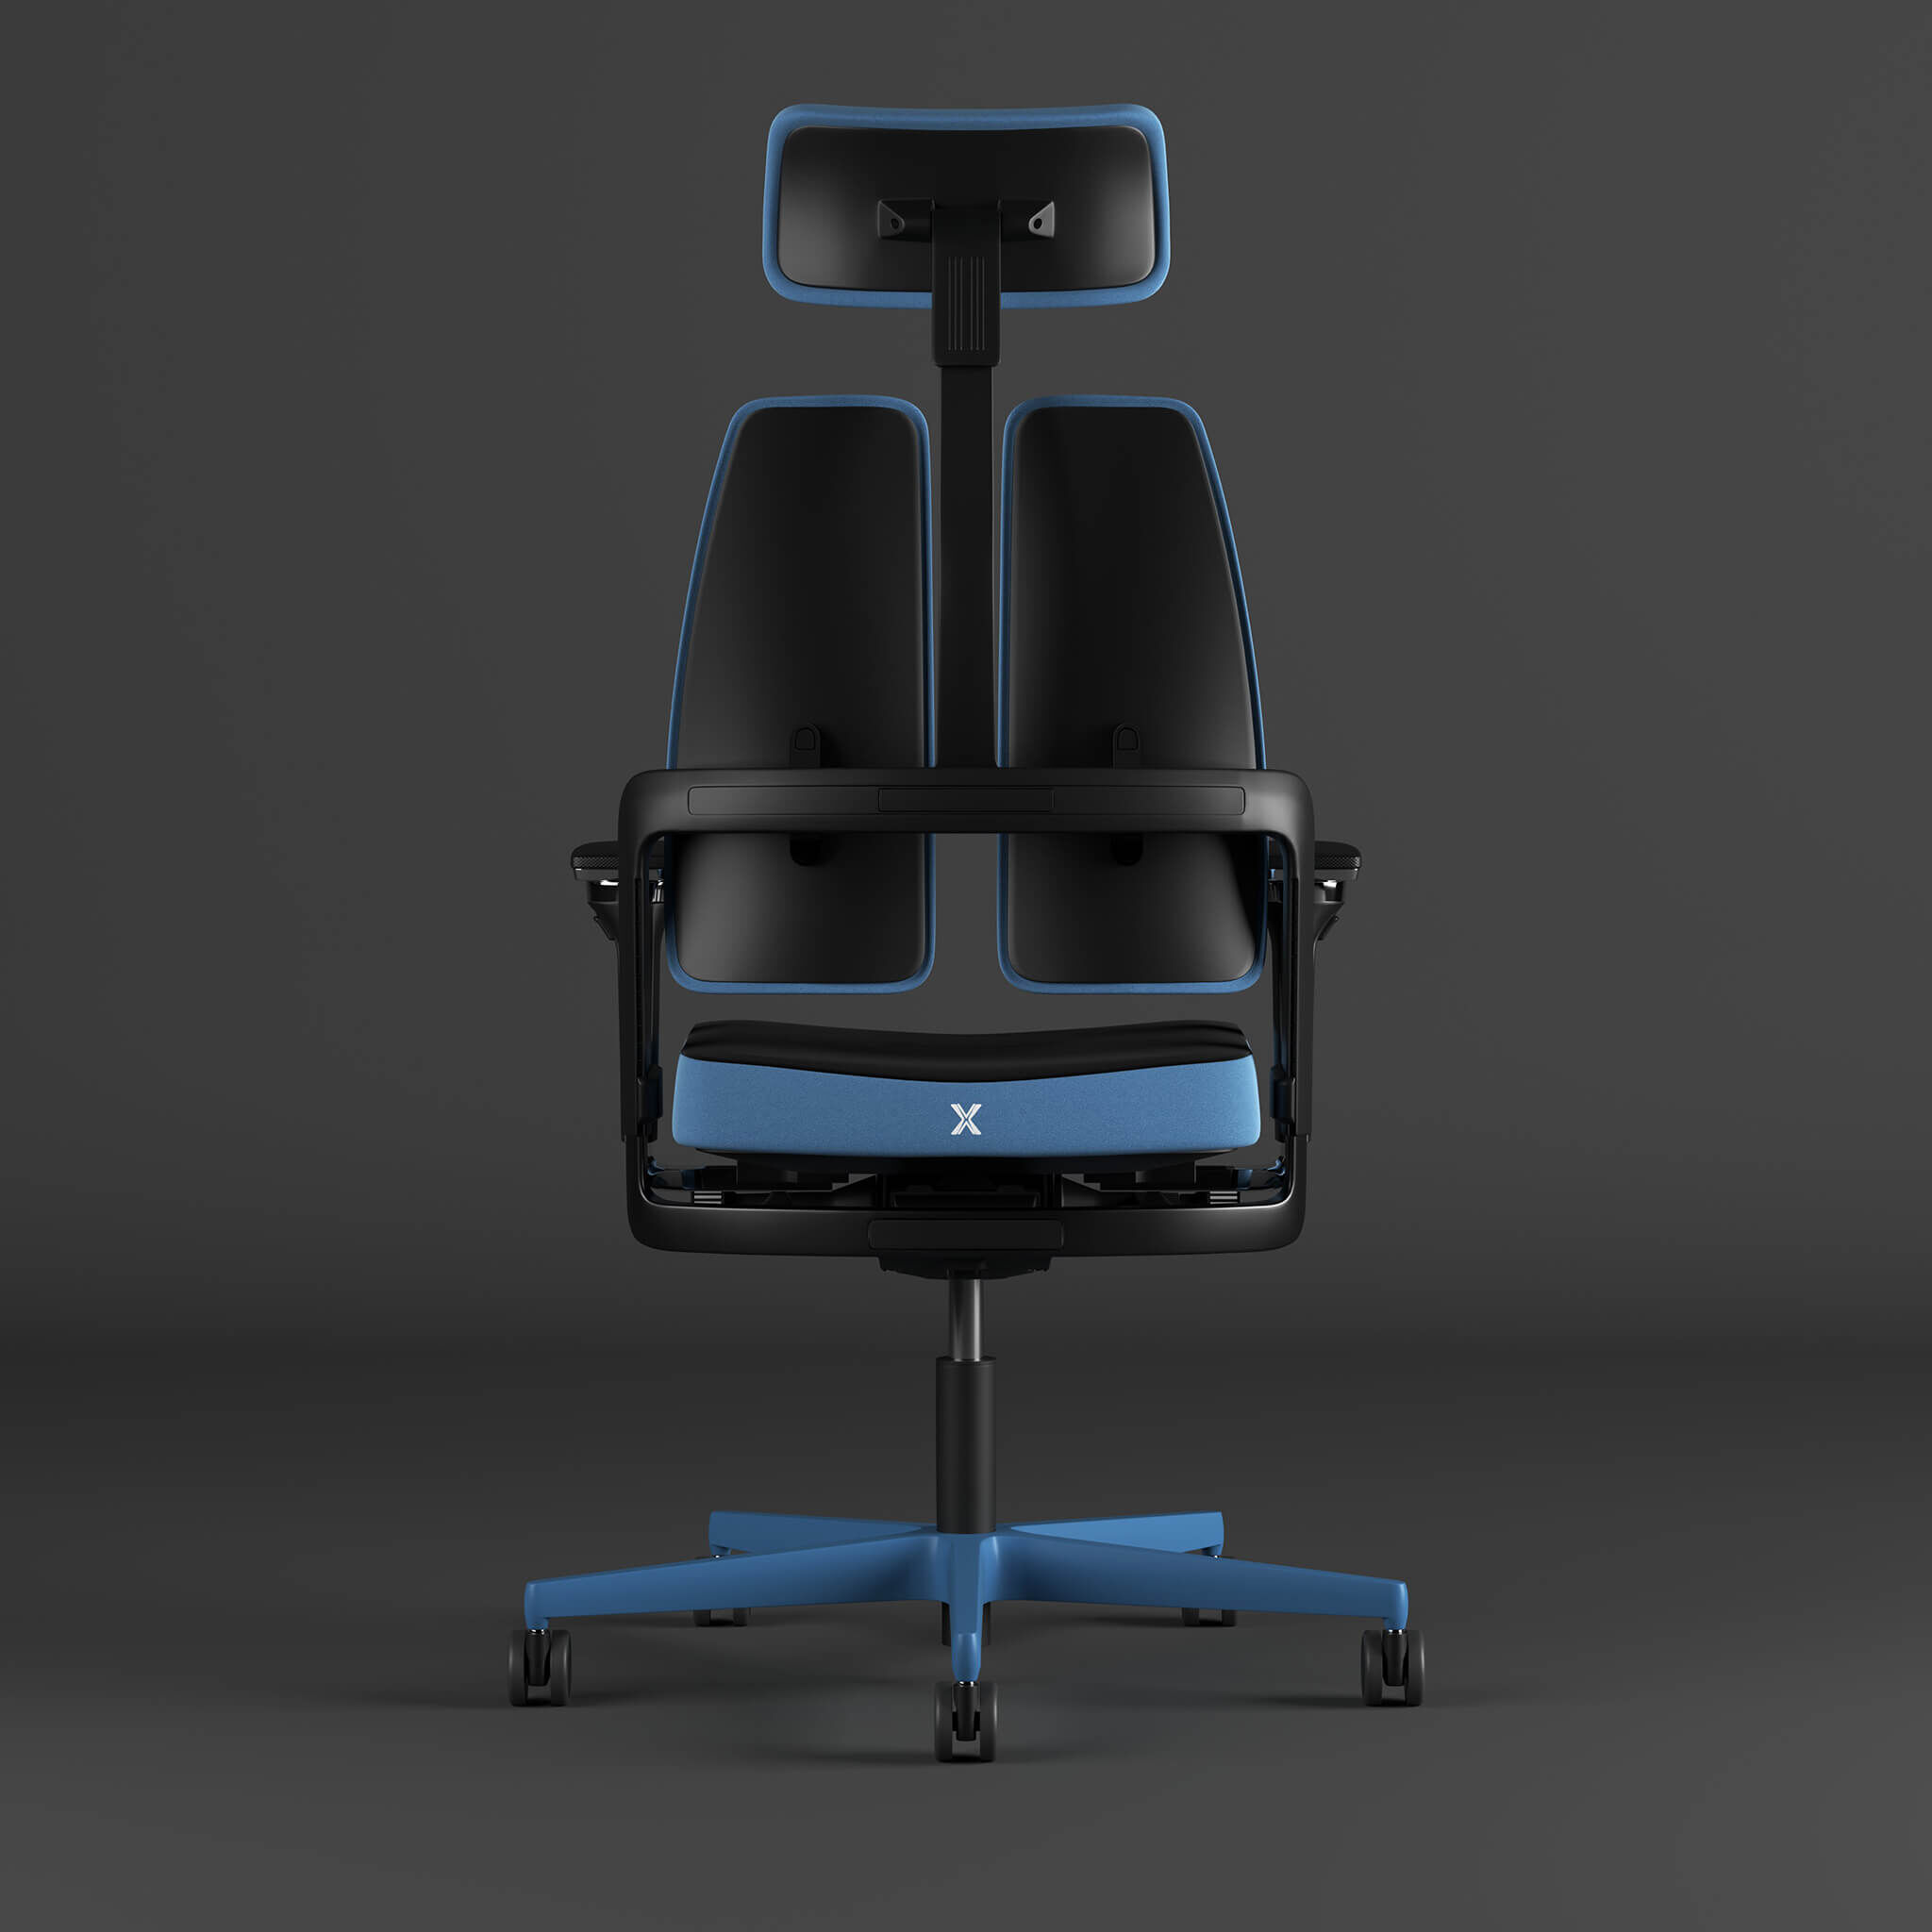 Nowy Styl Xilium-G Gaming Chair blue mit zweigeteilter Rückenlehne und X-Move-Technologie